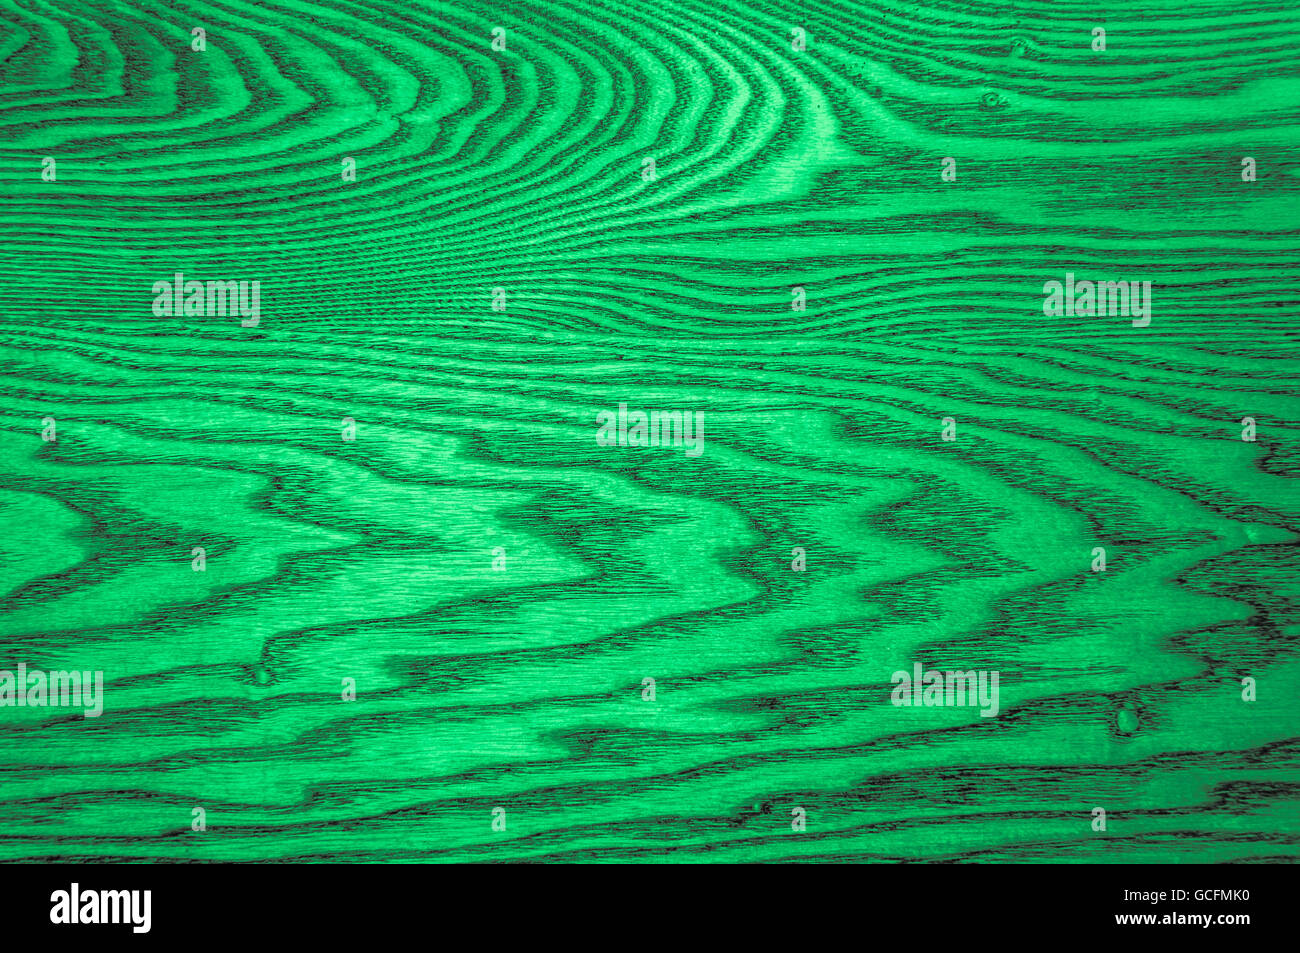 Perfetto verde menta luce grigiastra verdastro texture di legno dispiegamento di sfondo per tutto lo schermo Foto Stock